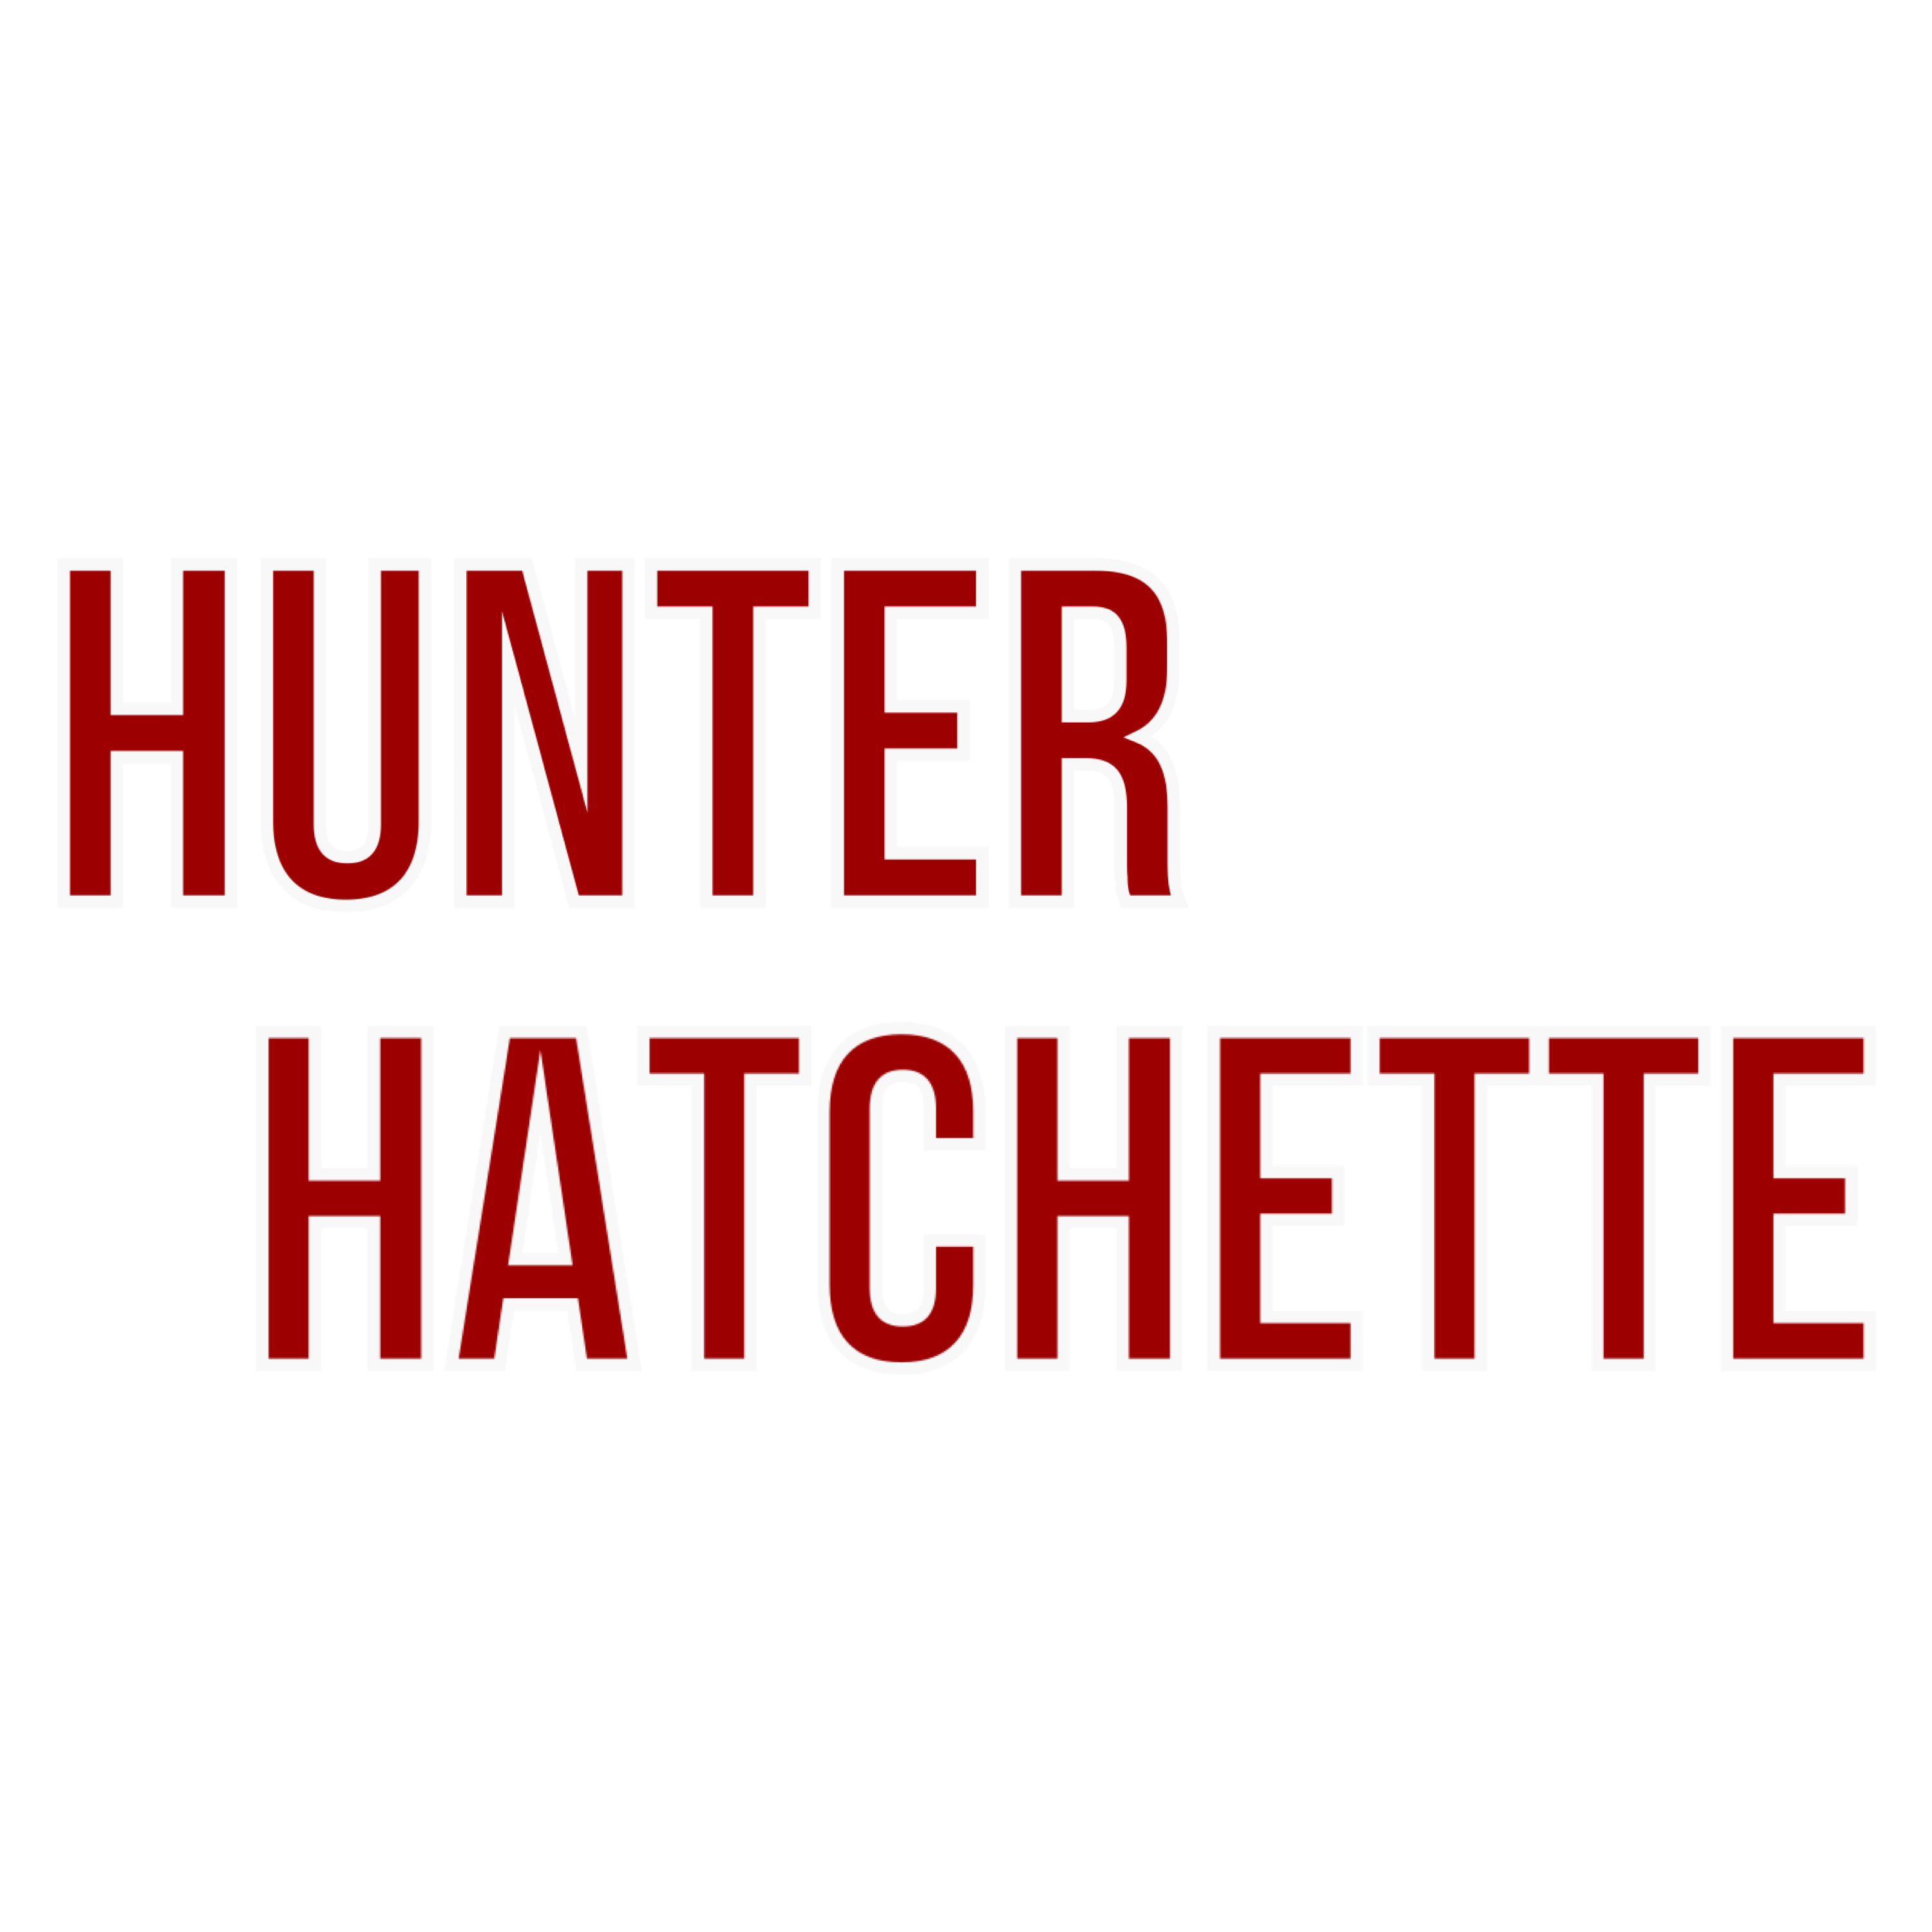 Hunter Hatchette